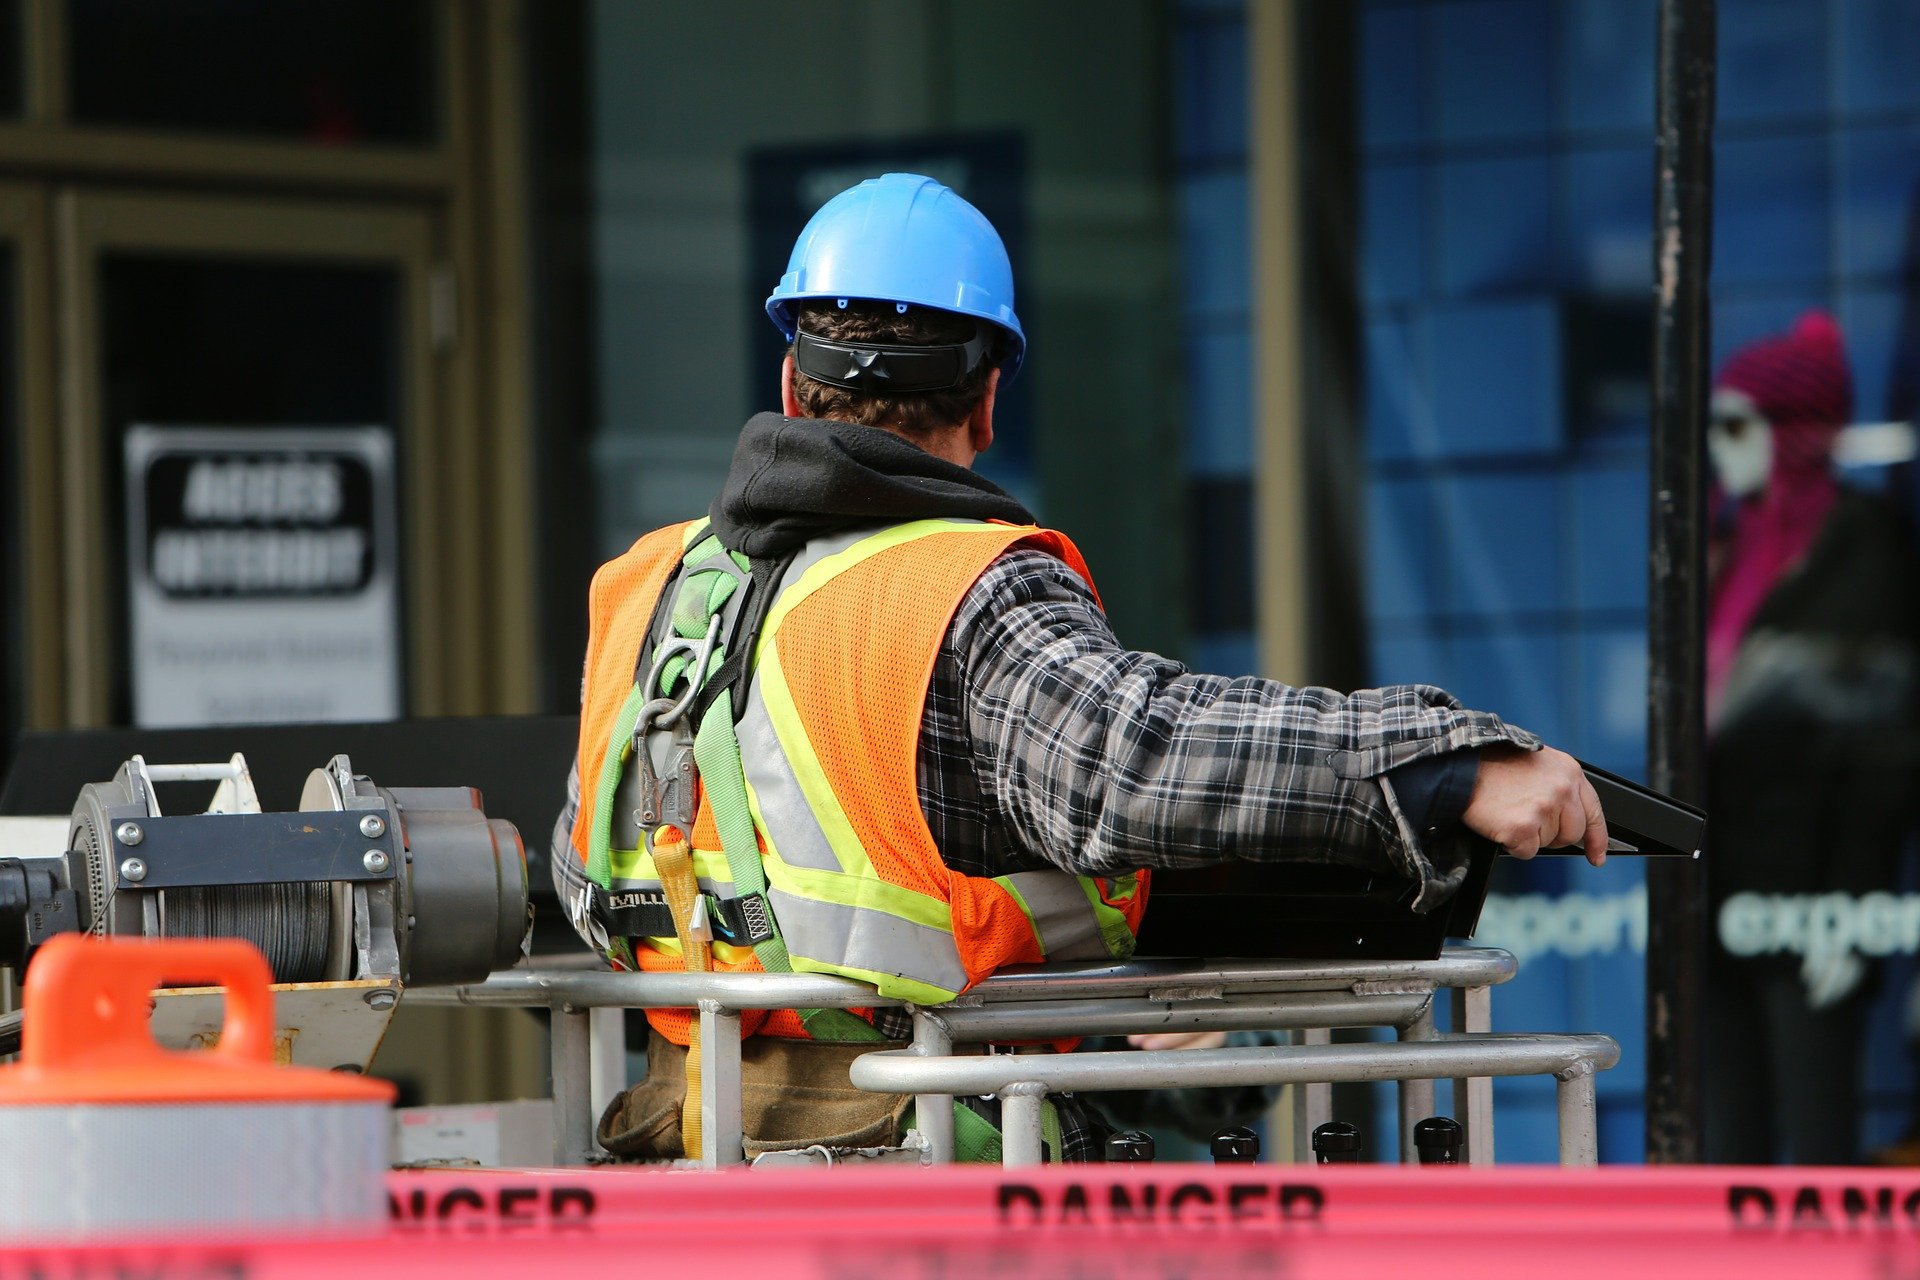 Cursos Seguridad y Prevención de Accidentes y Riesgos Laborales en la Manipulación de Equipos de Trabajo Móviles